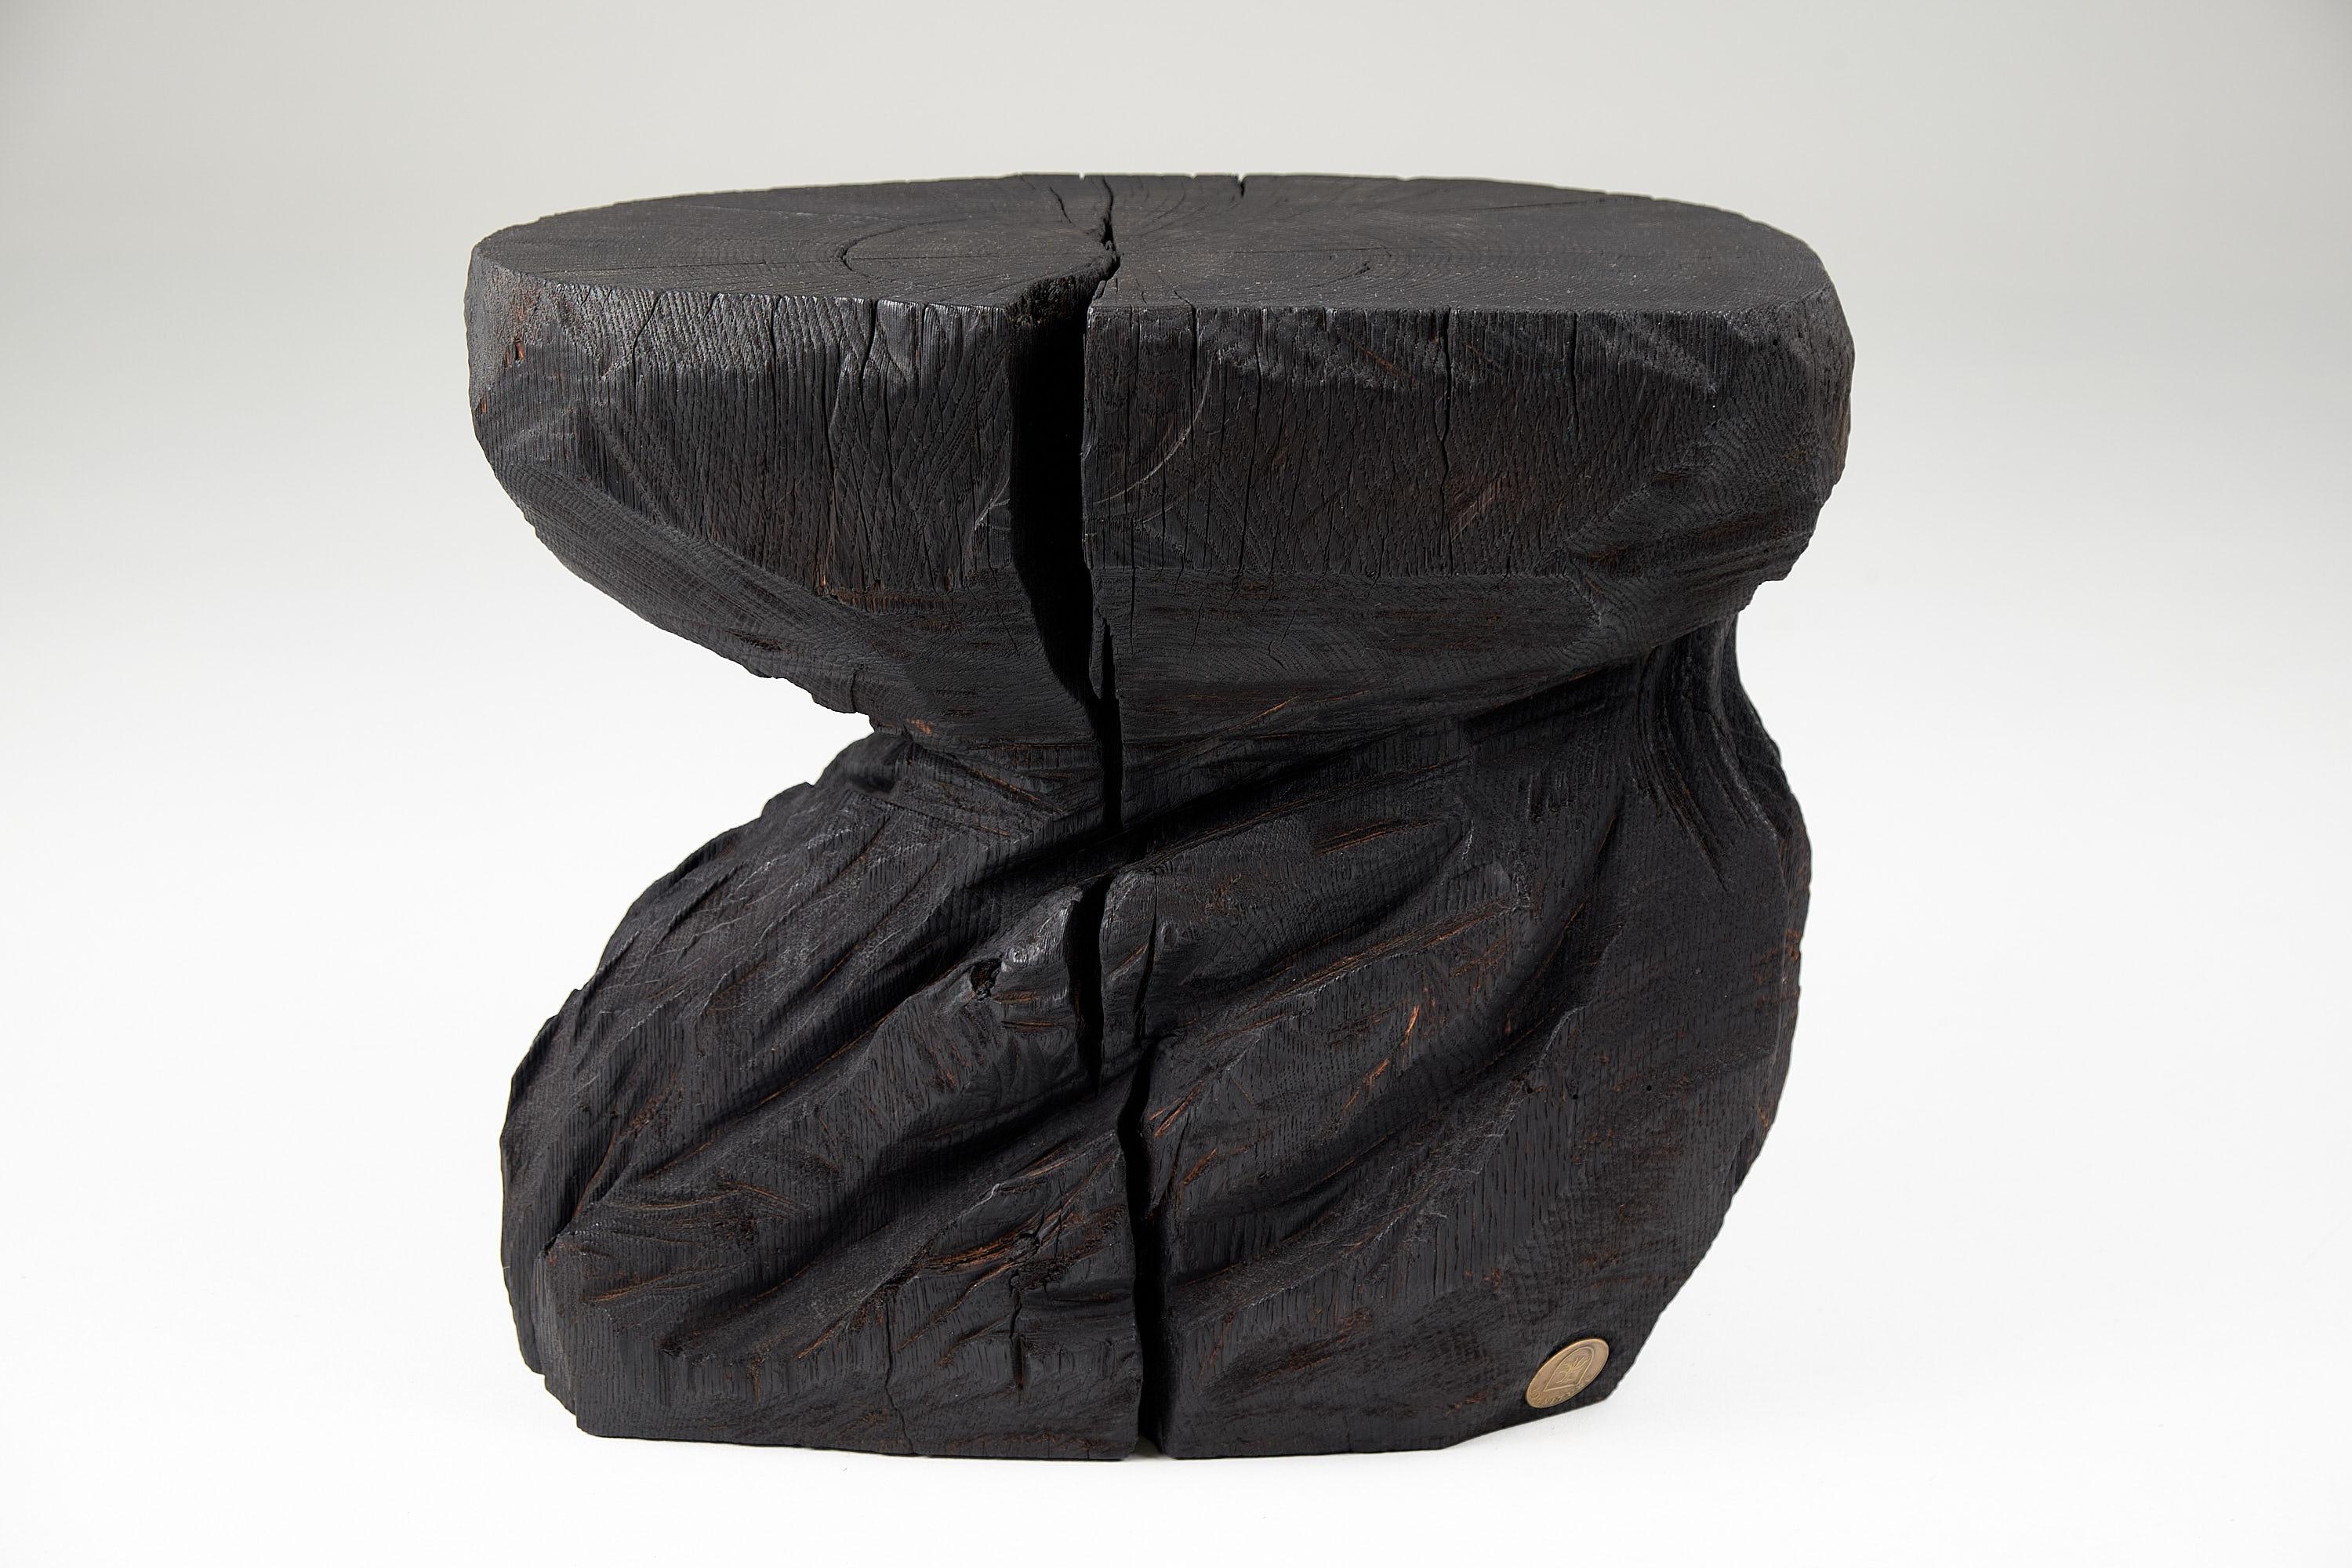 Tabouret/table d'appoint sculpté à la tronçonneuse. Sculpté dans une seule pièce de bois de chêne brûlé et protégé par des huiles de la plus haute qualité, il est durable pour des générations. Un tel design unique fait à la main mettra en valeur